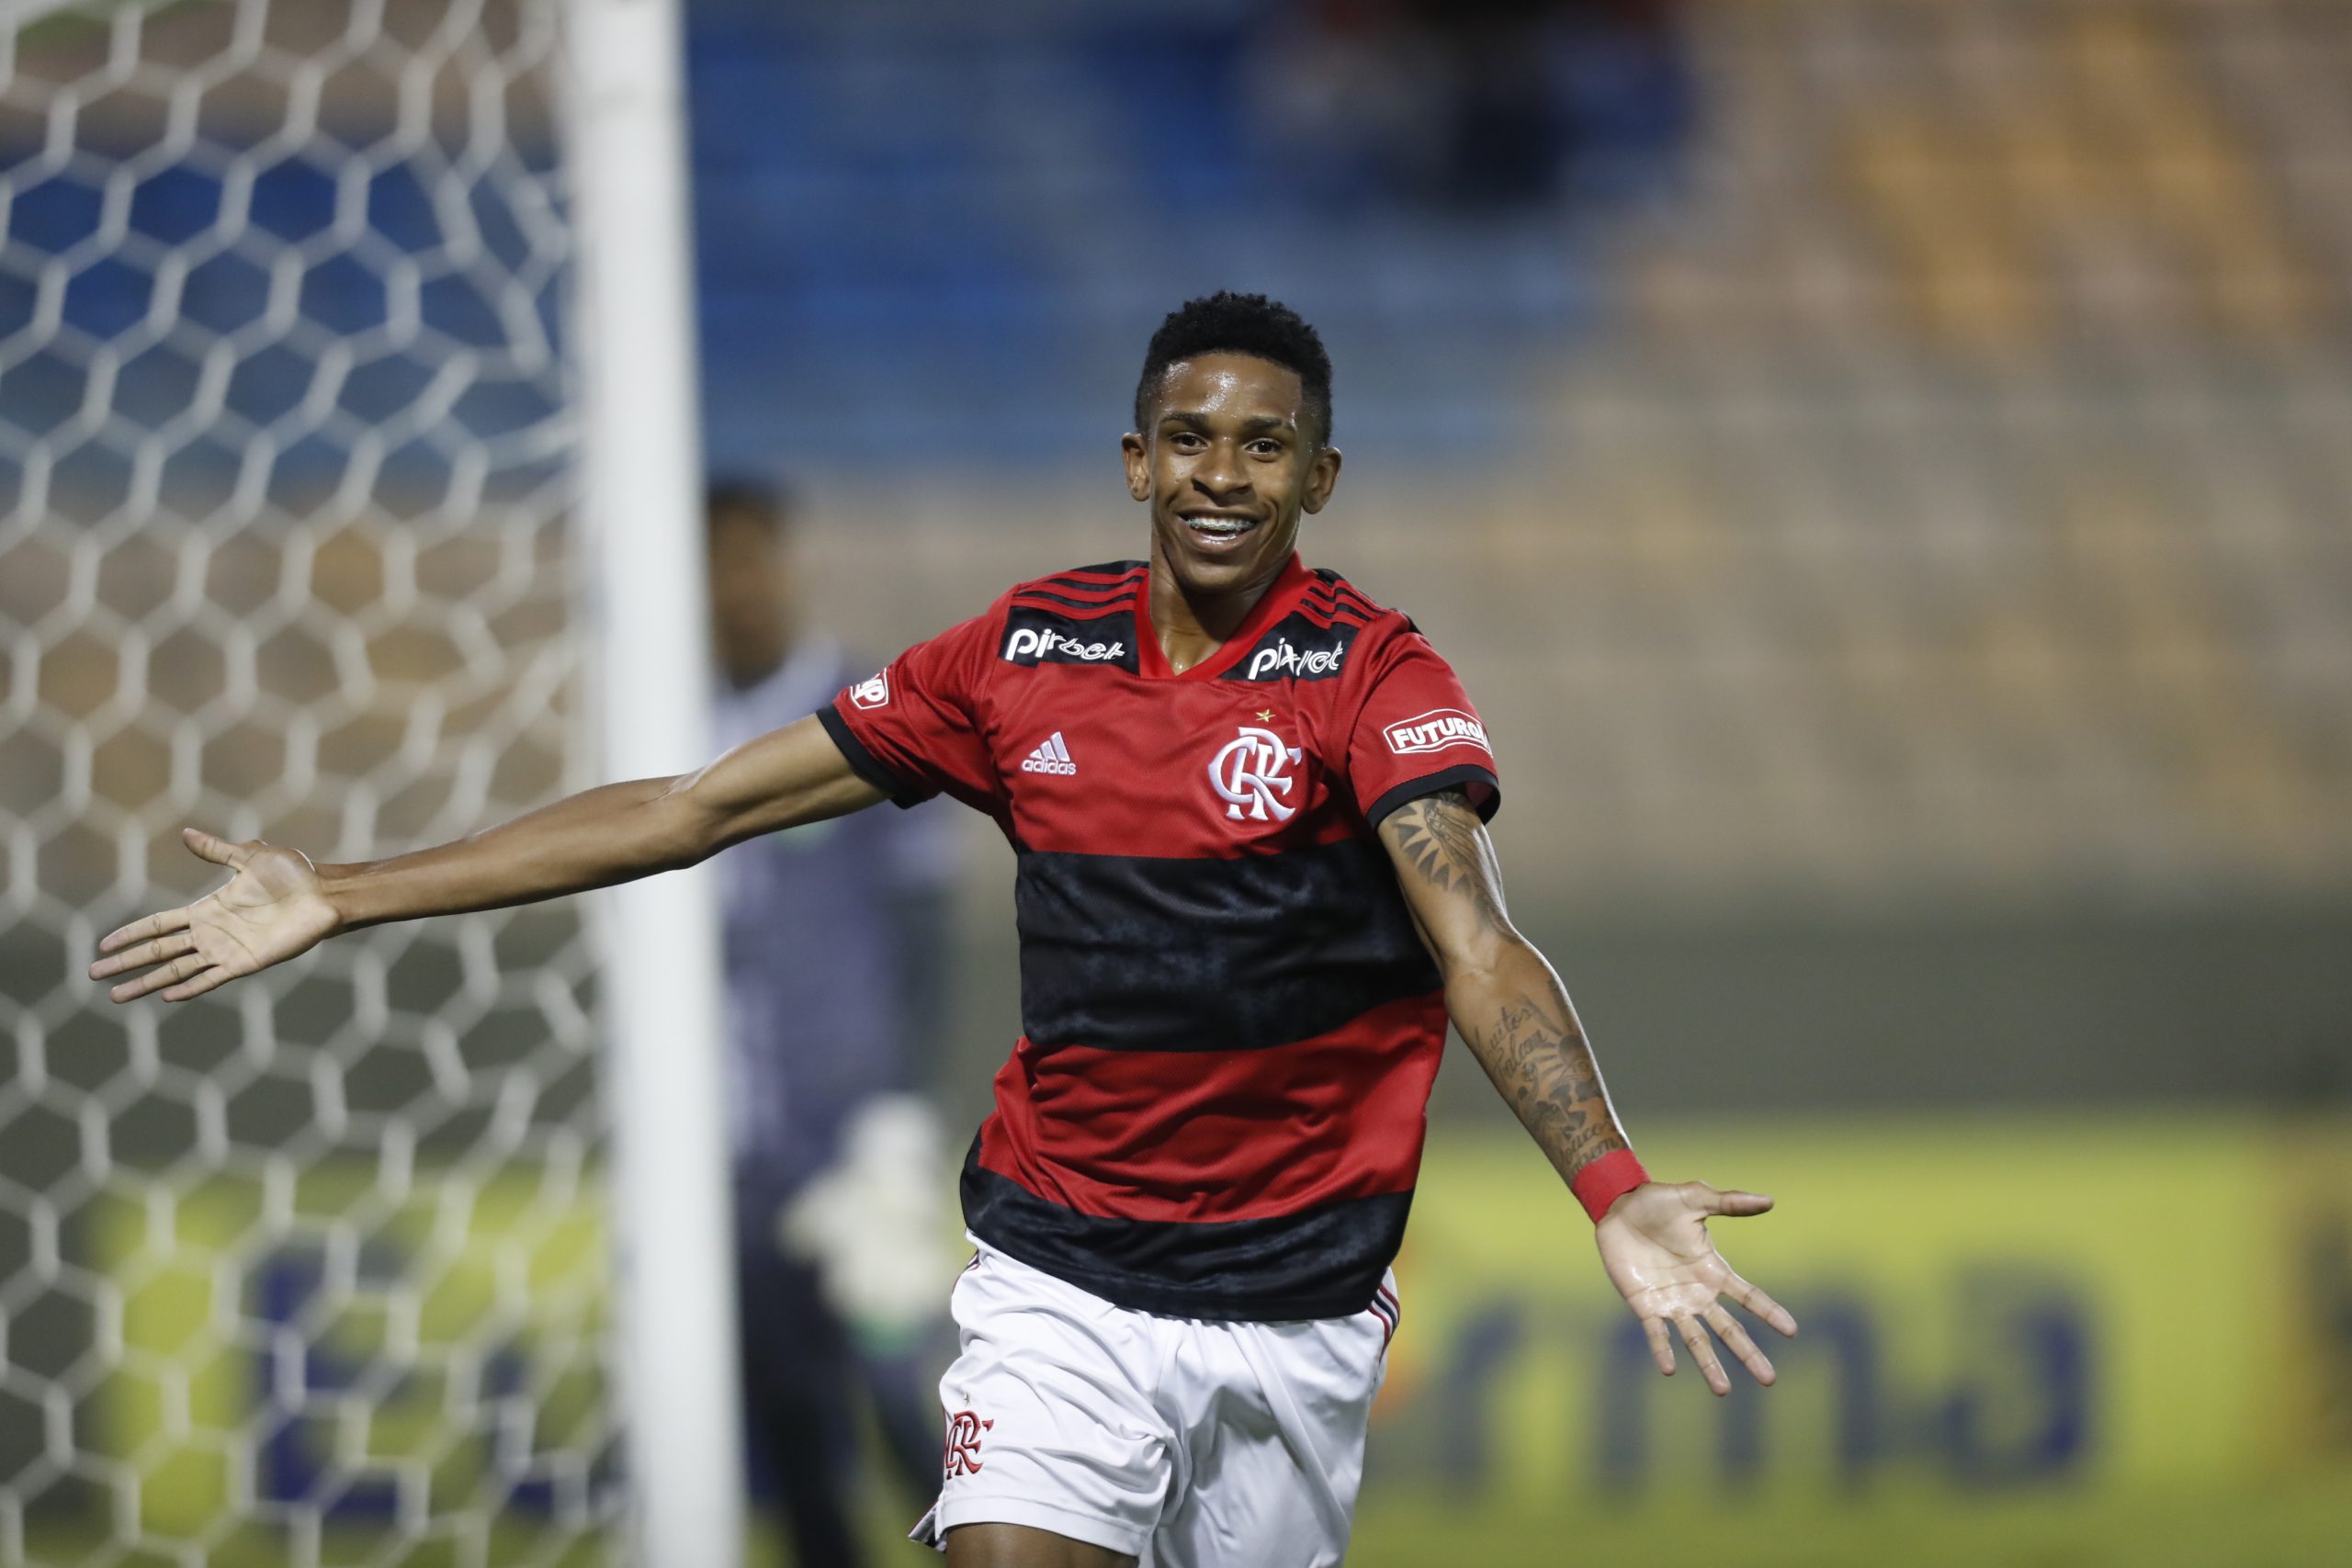 André comemorando gol na Copinha contra o Floresta